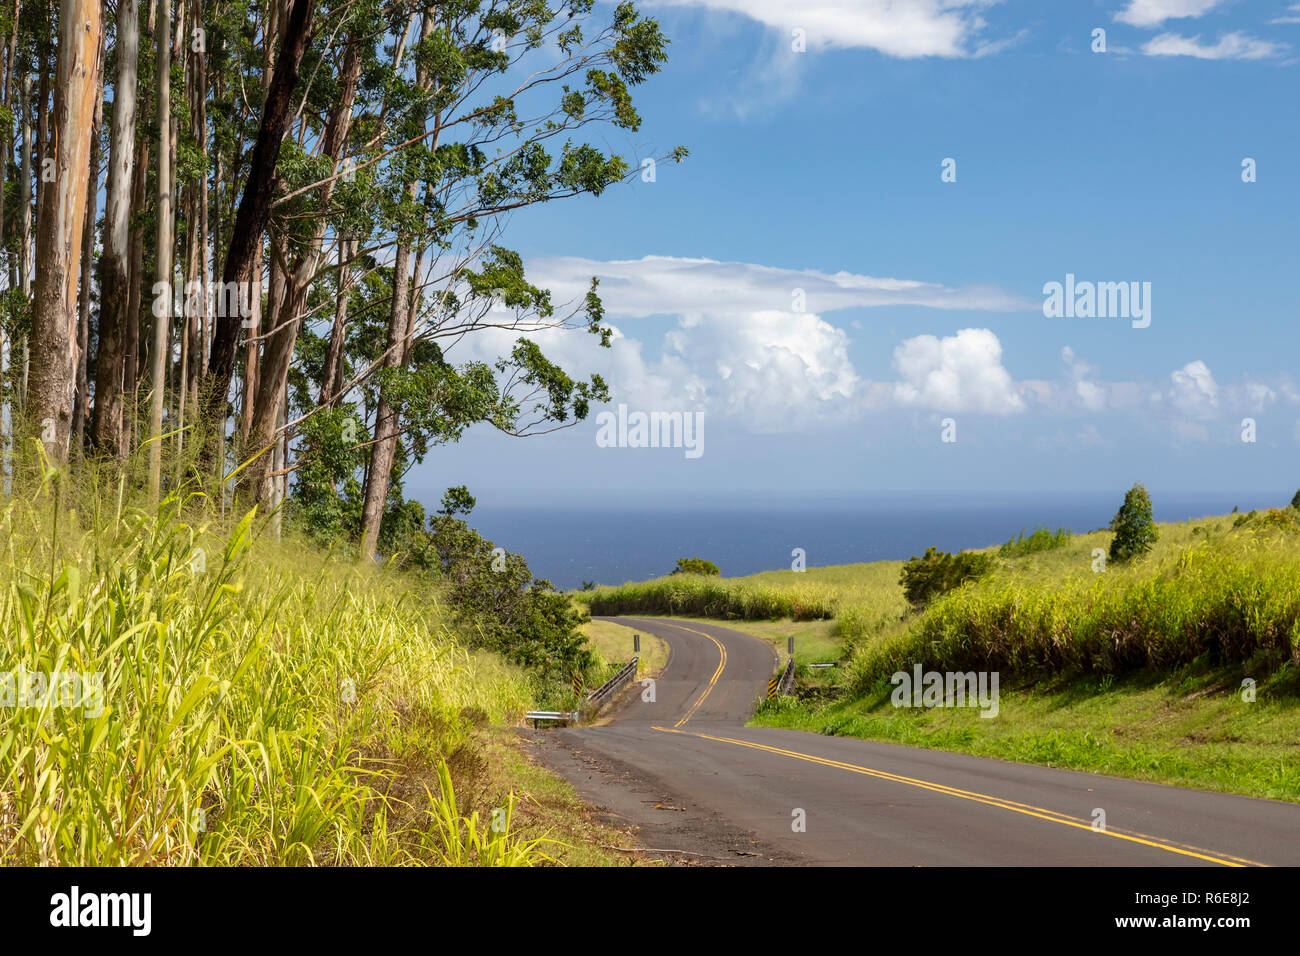 Pa'auilo, Hawaii - eucalyptus line un chemin rural au-dessus de l'océan Pacifique. Des milliers d'hectares d'eucalyptus ont été plantés après th Banque D'Images